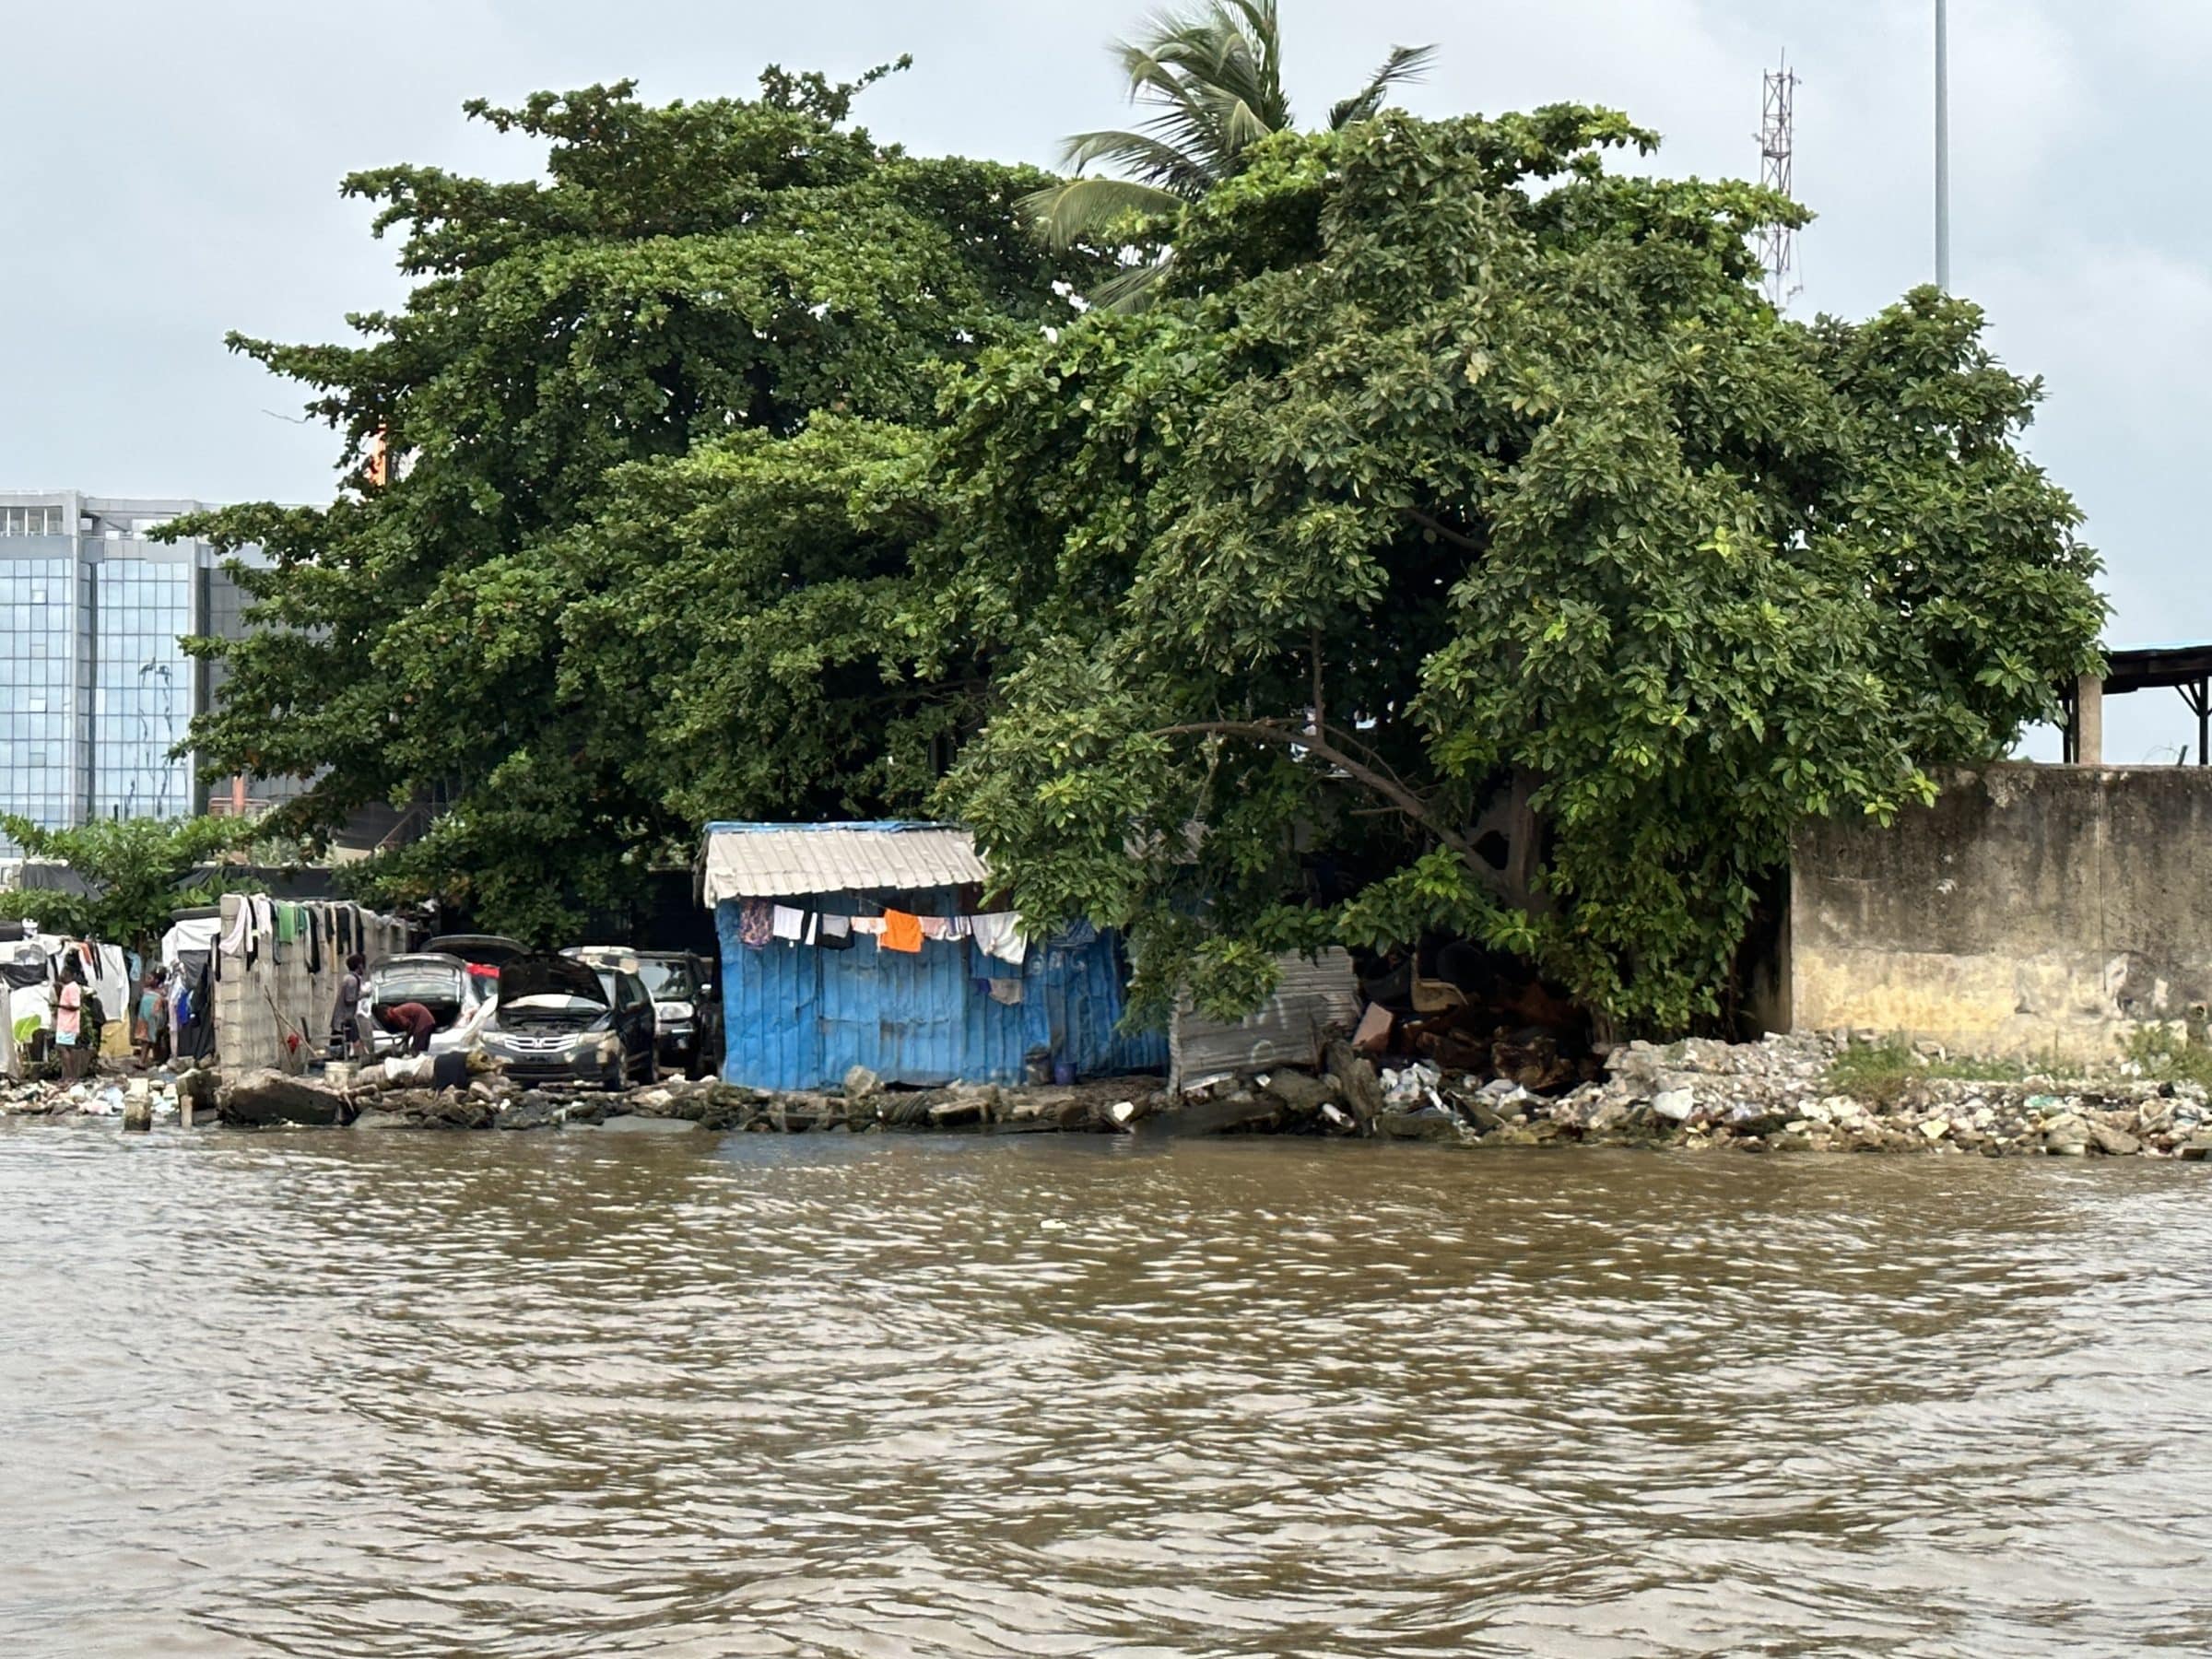 Alojamento junto à água | Desembarque na Nigéria